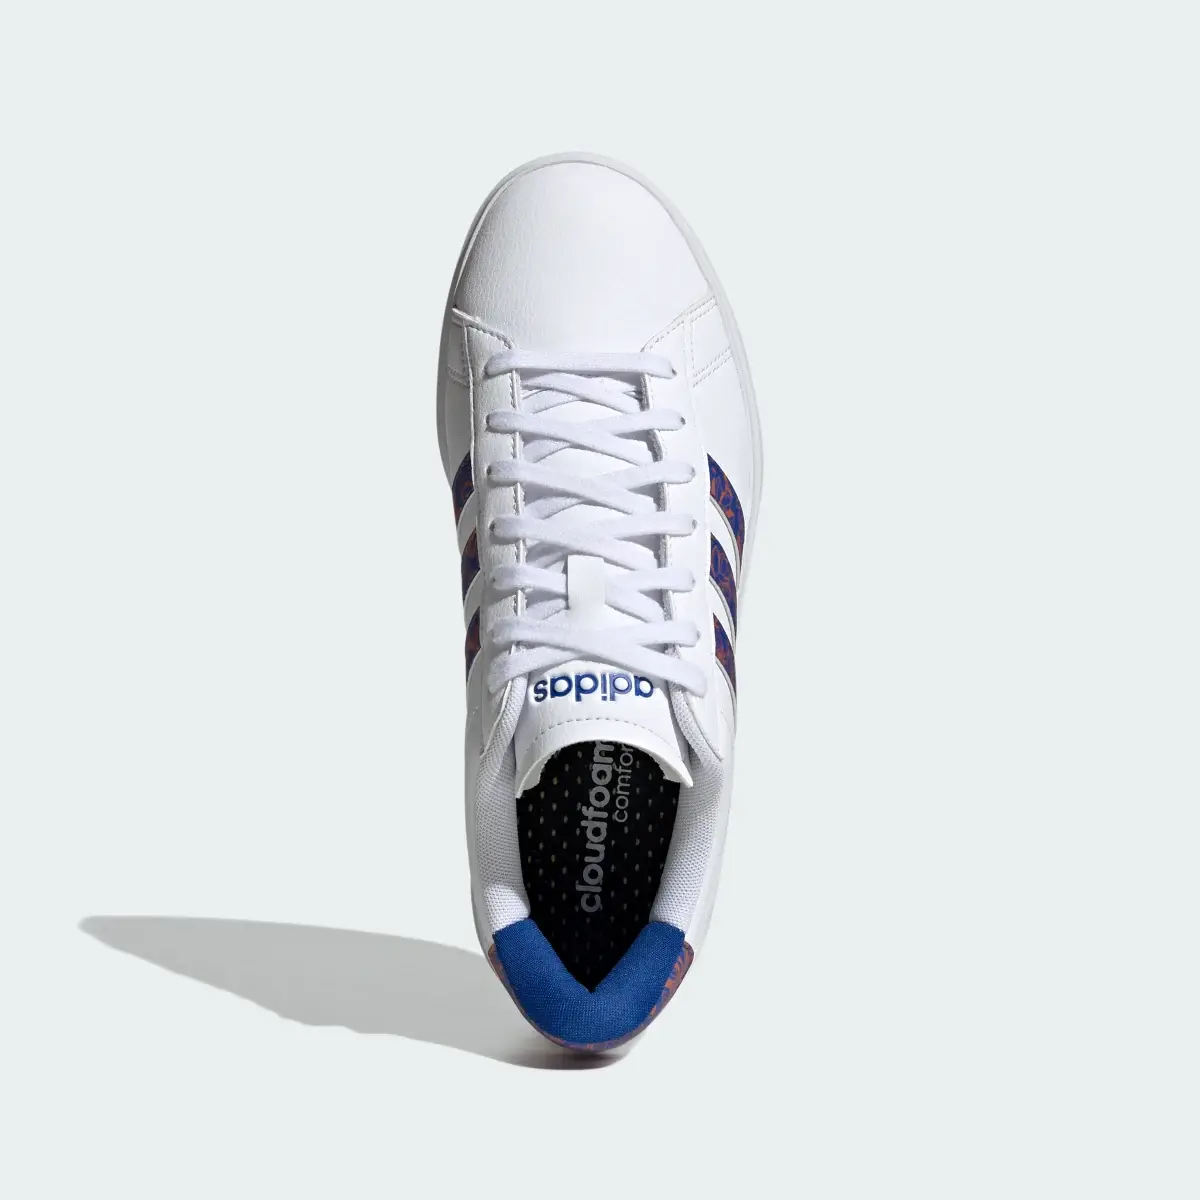 Adidas Grand Court 2.0 Ayakkabı. 3